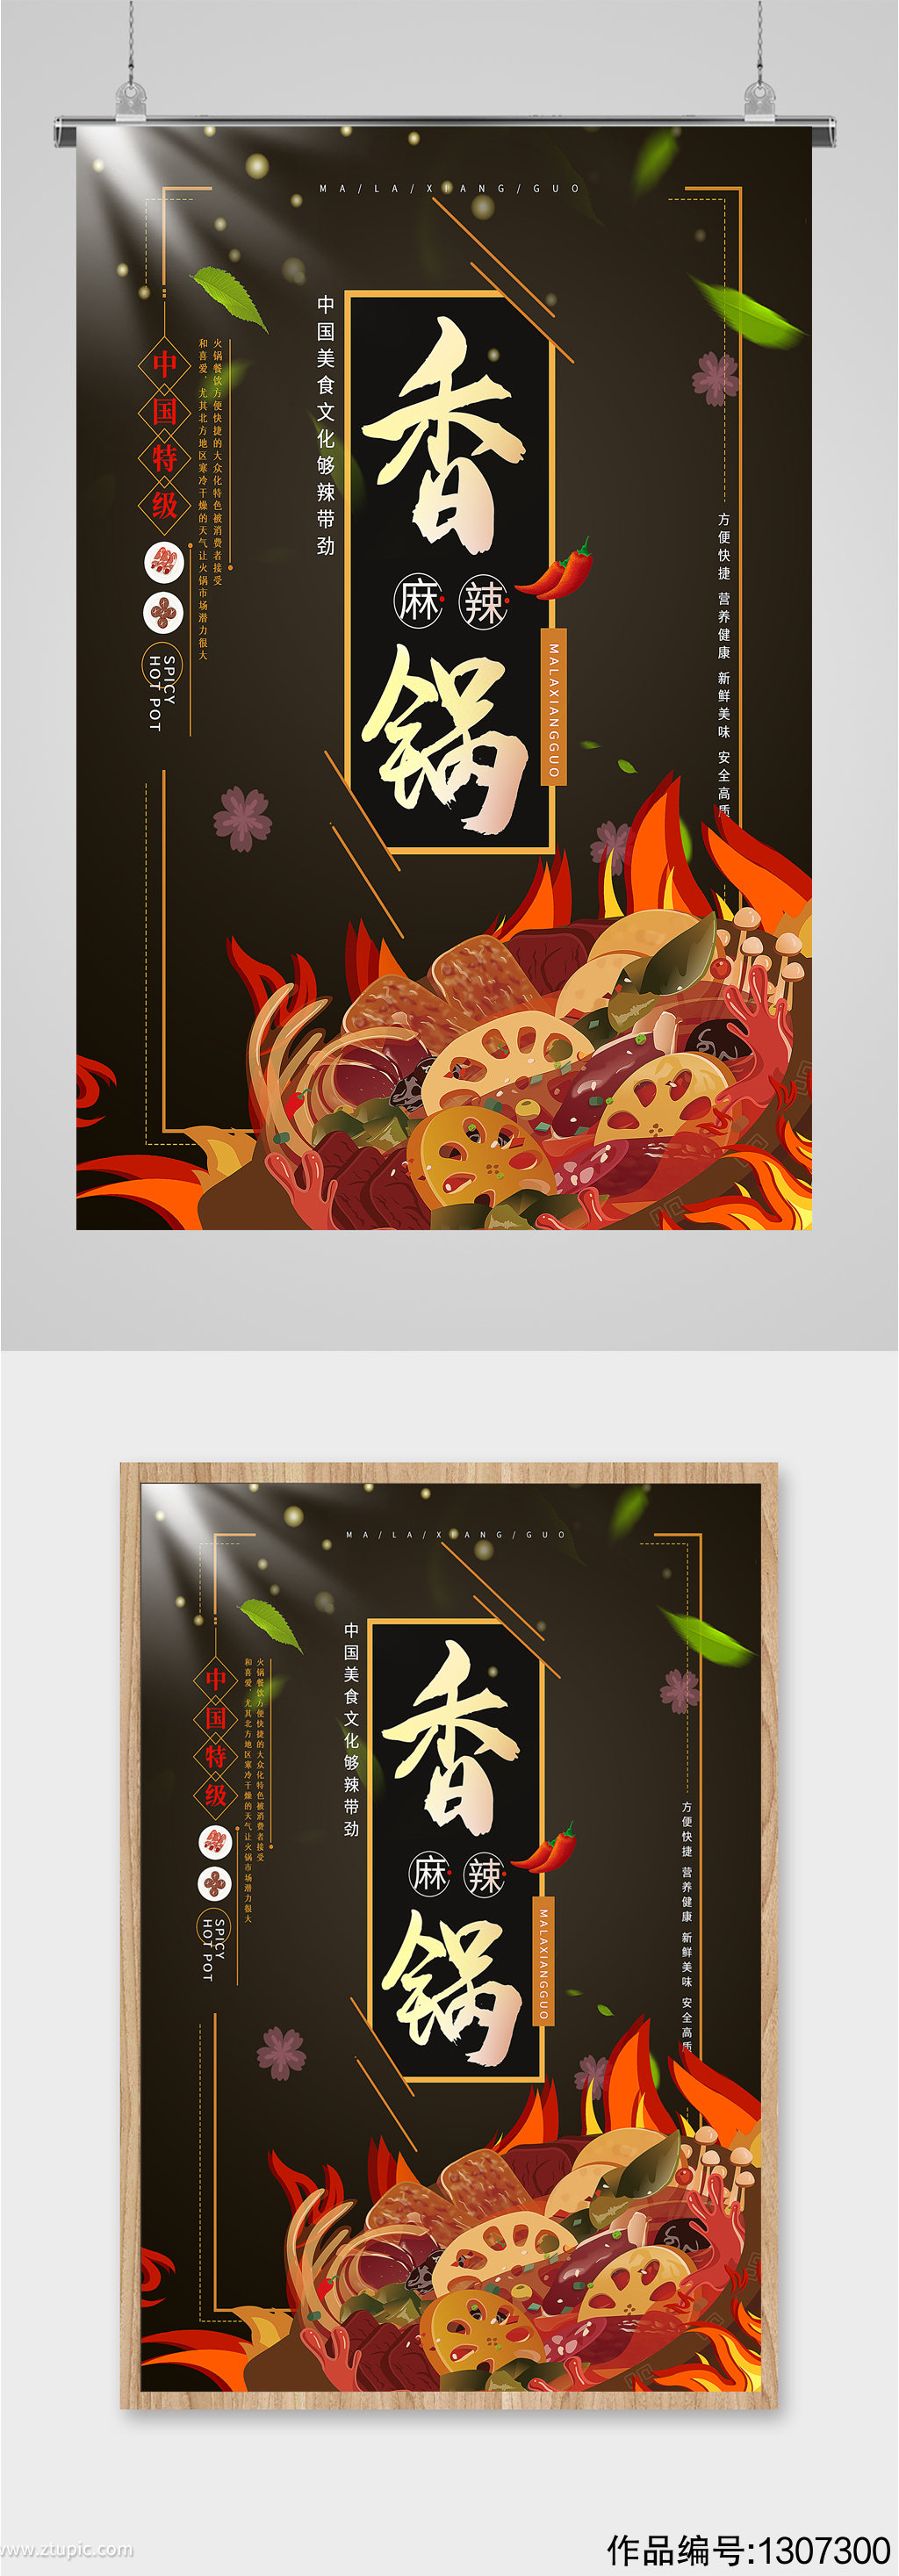 麻辣香锅美食宣传海报模板下载-编号1307300-众图网